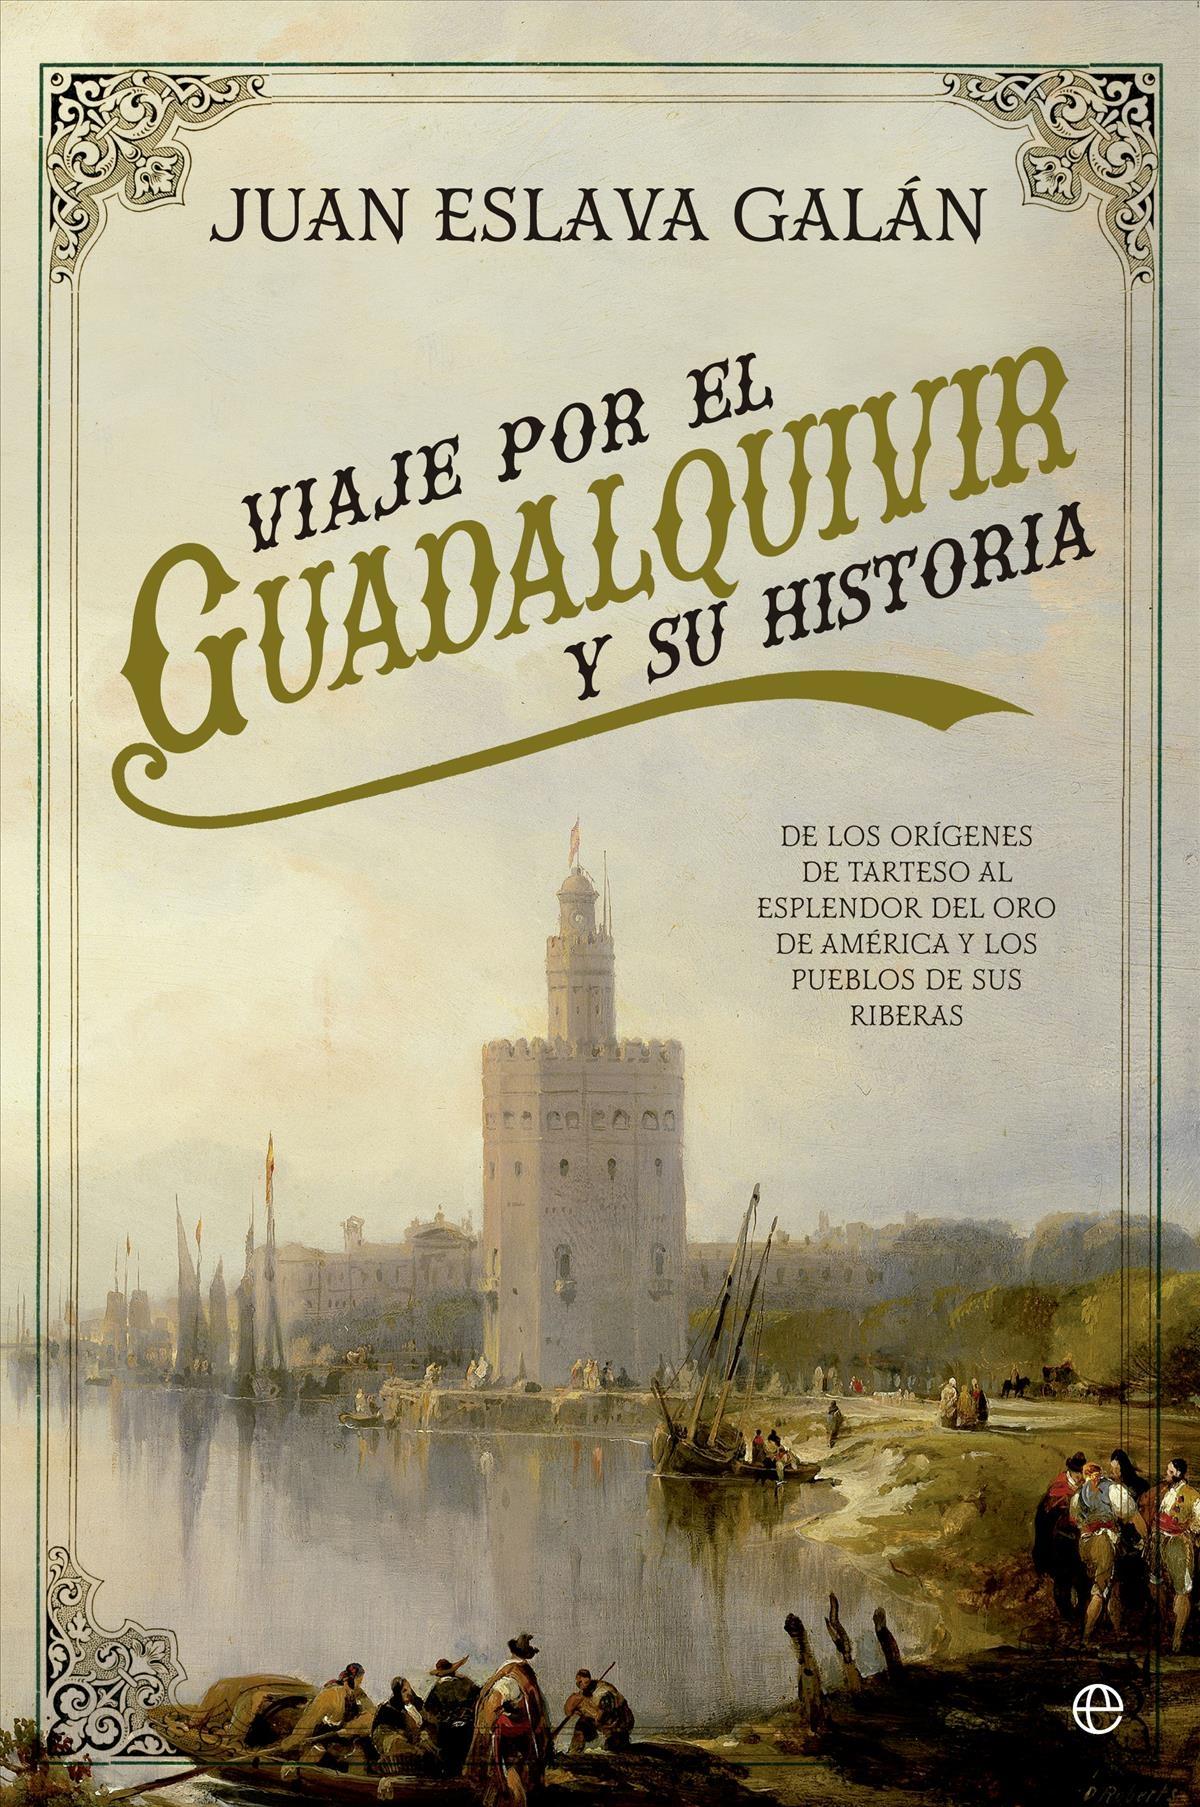 Viaje por el Guadalquivir y su Historia "De los Orígenes de Tarteso al Esplendor del Oro de América y los Pueblos de sus Riberas"